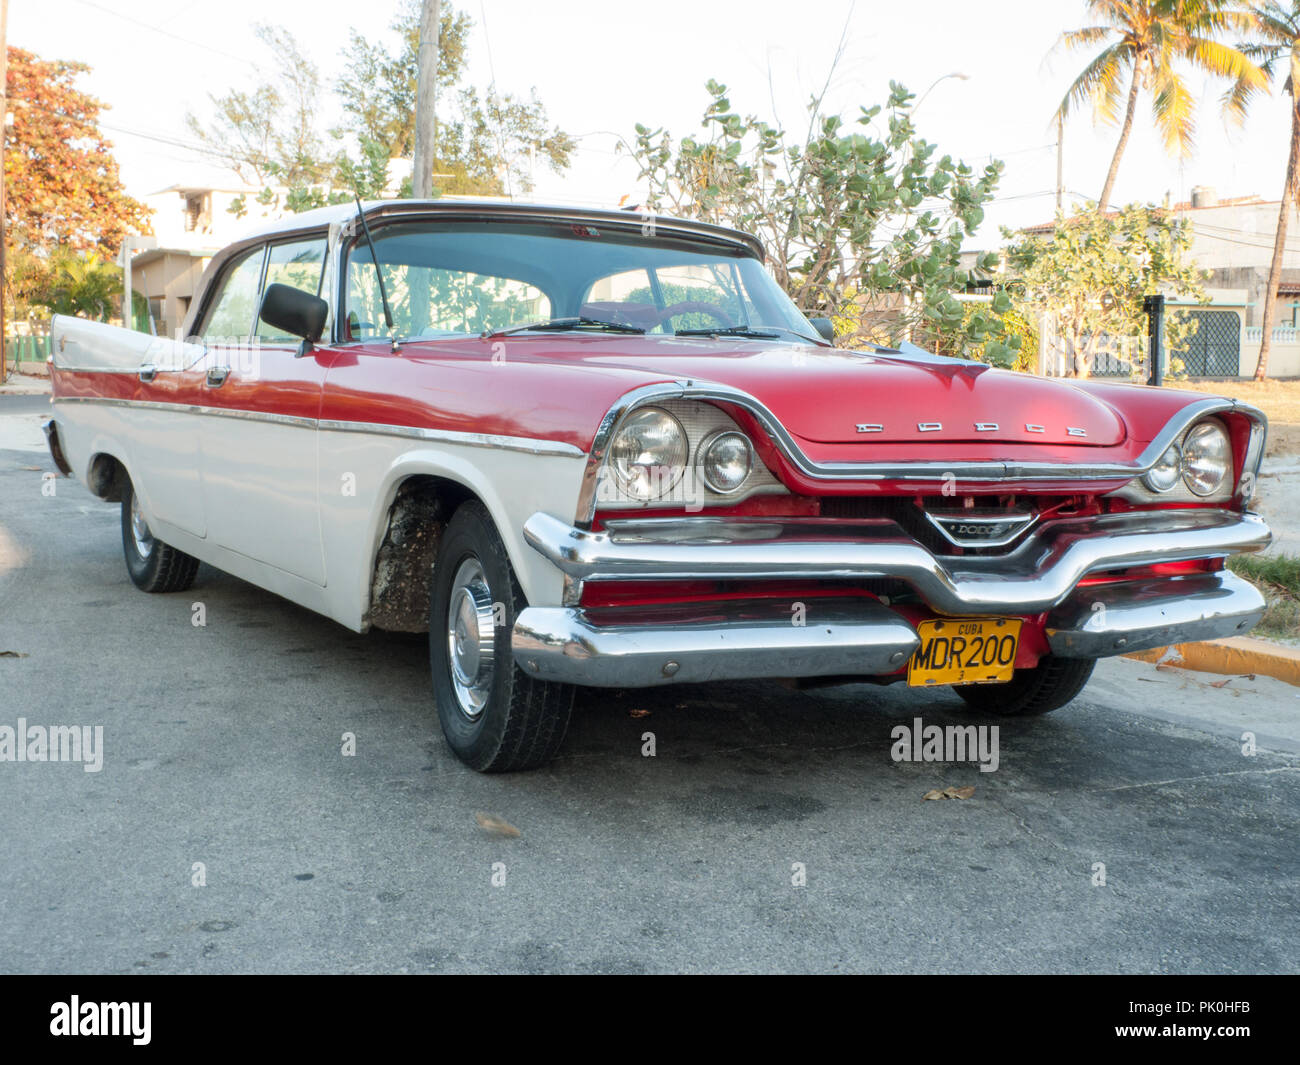 Car in Havana Cuba Stock Photo